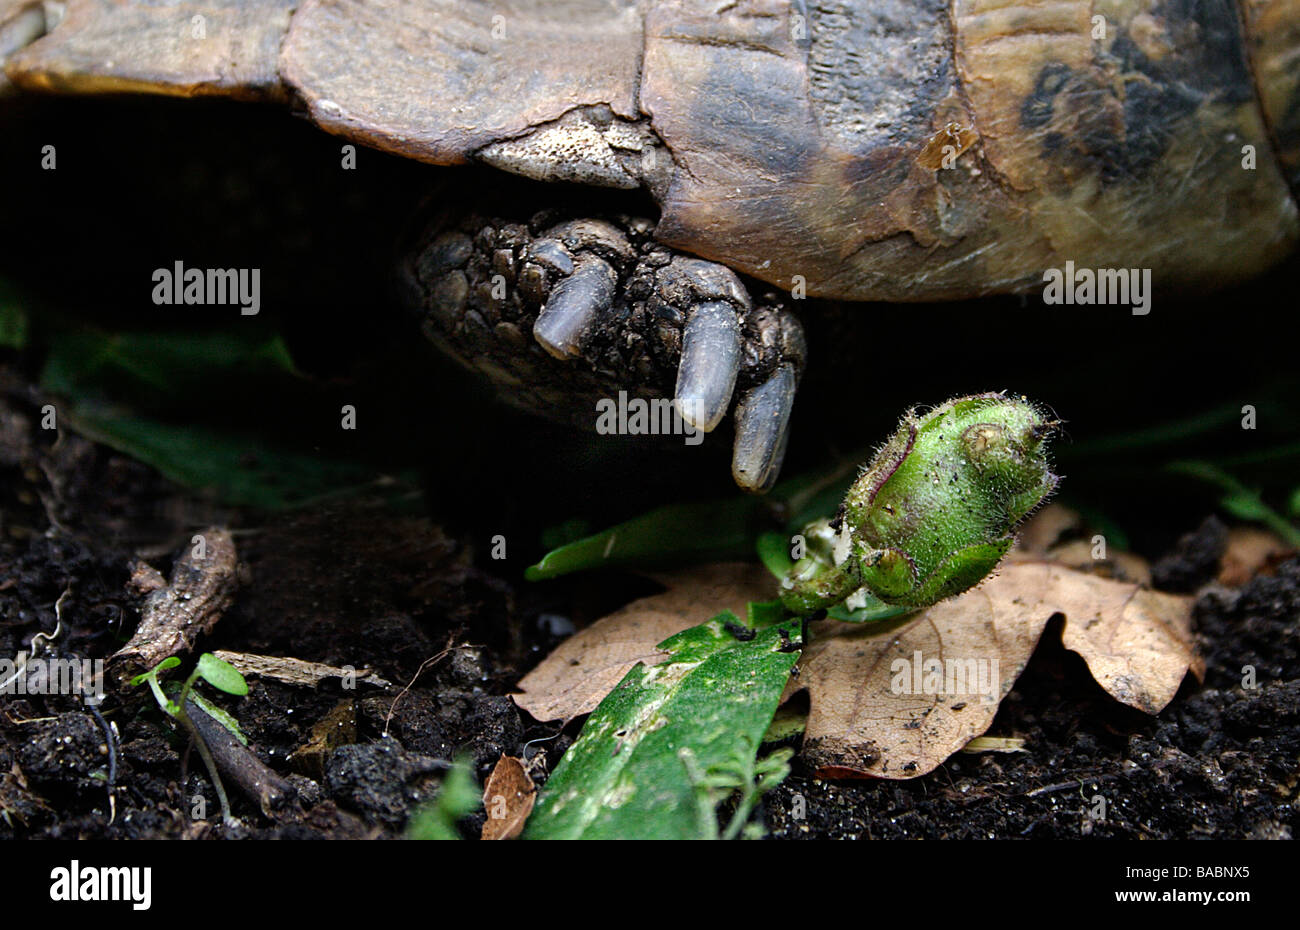 Cerca de garras de tortuga moviéndose en el jardín Foto de stock